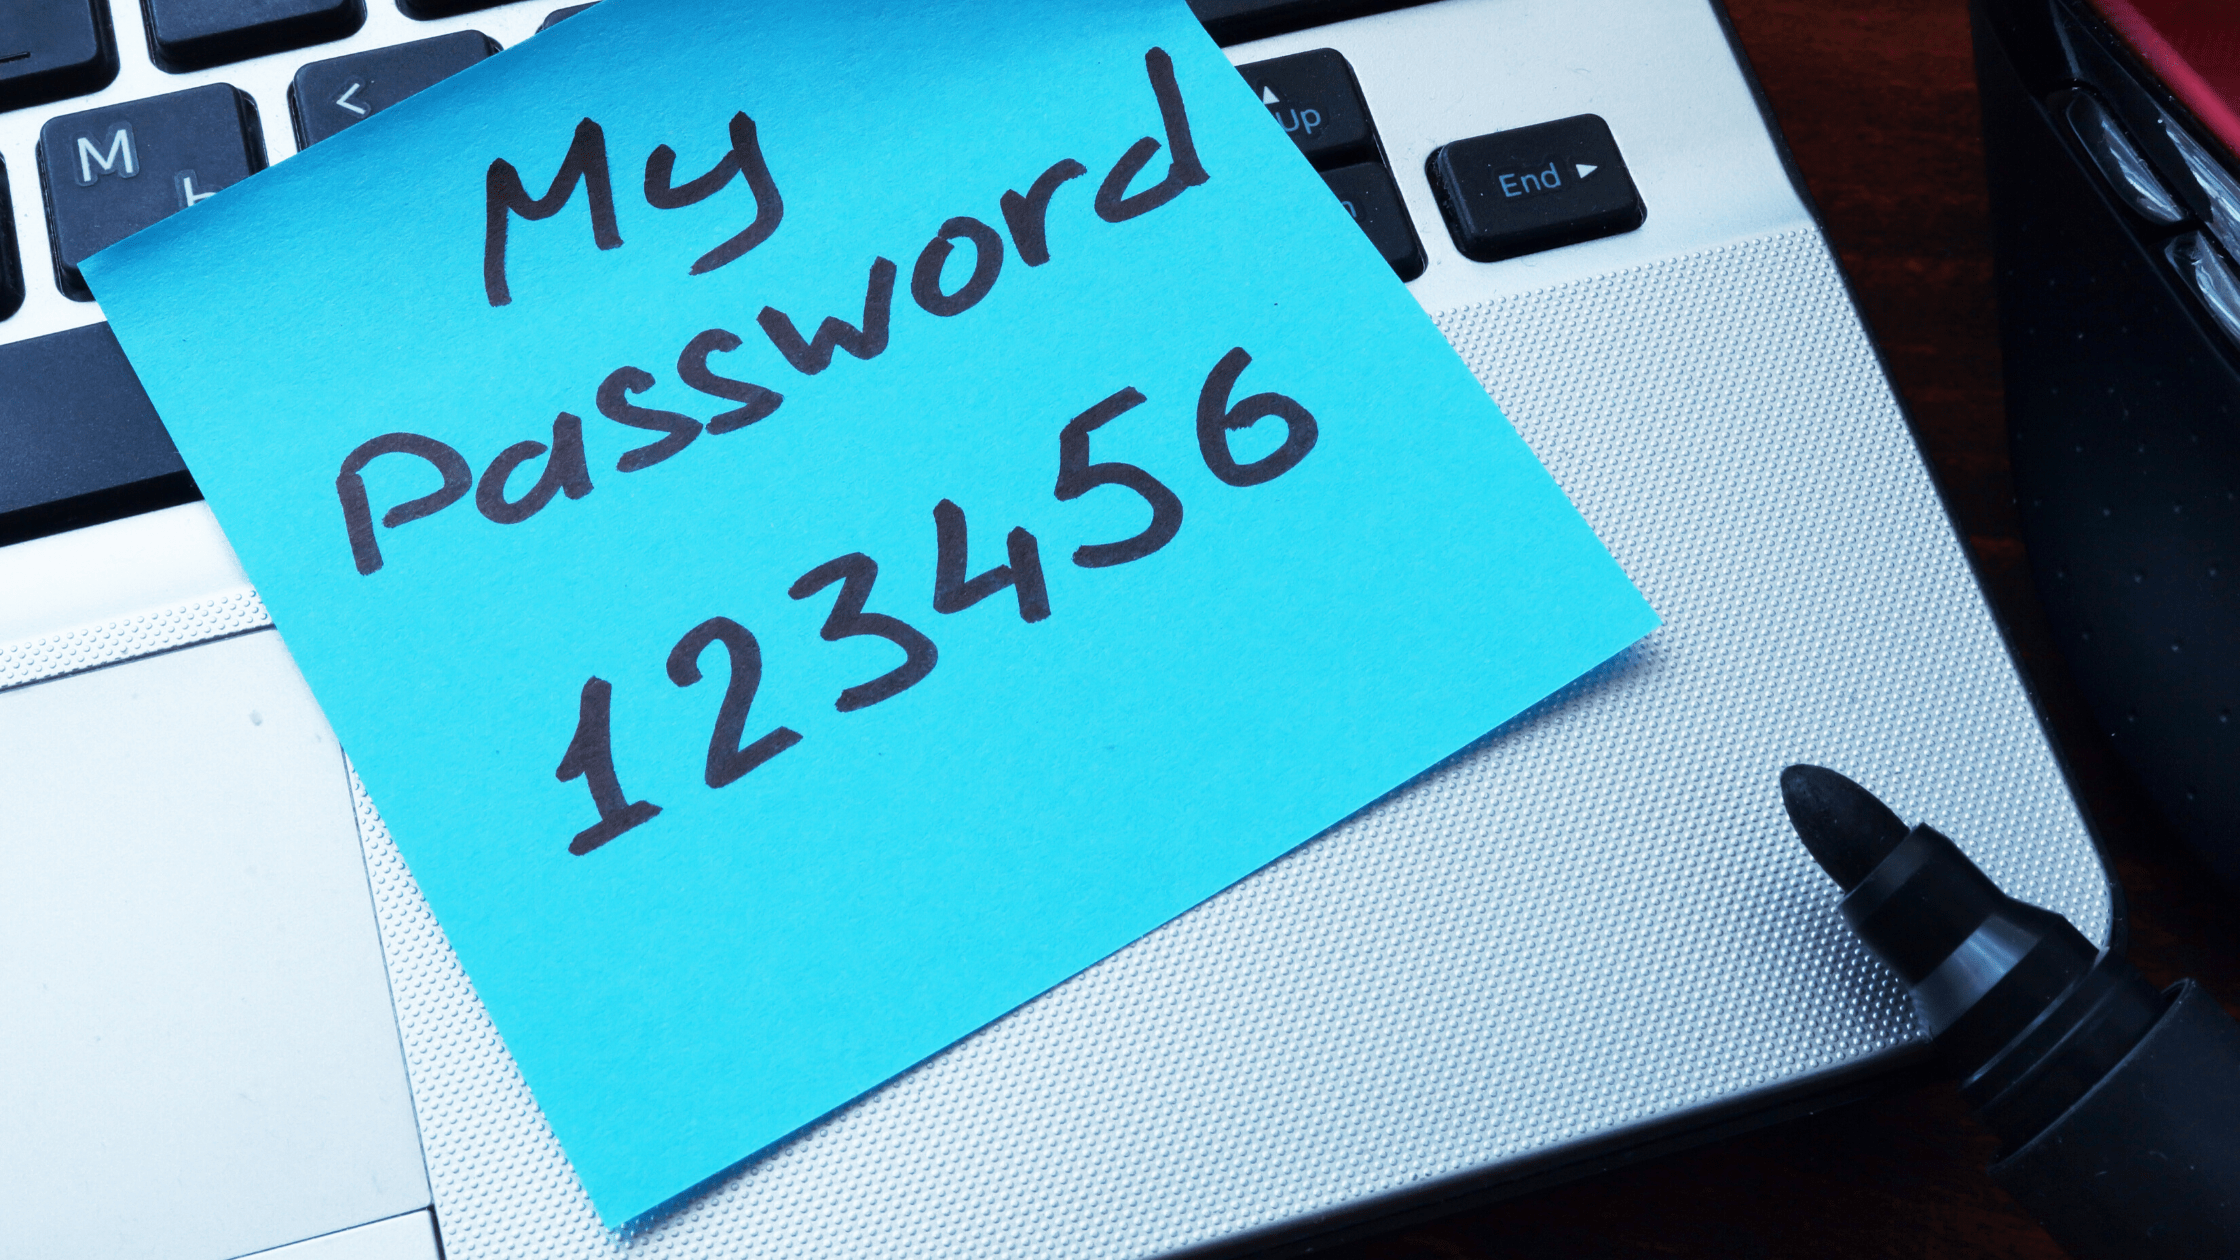 Dovresti condividere le password?